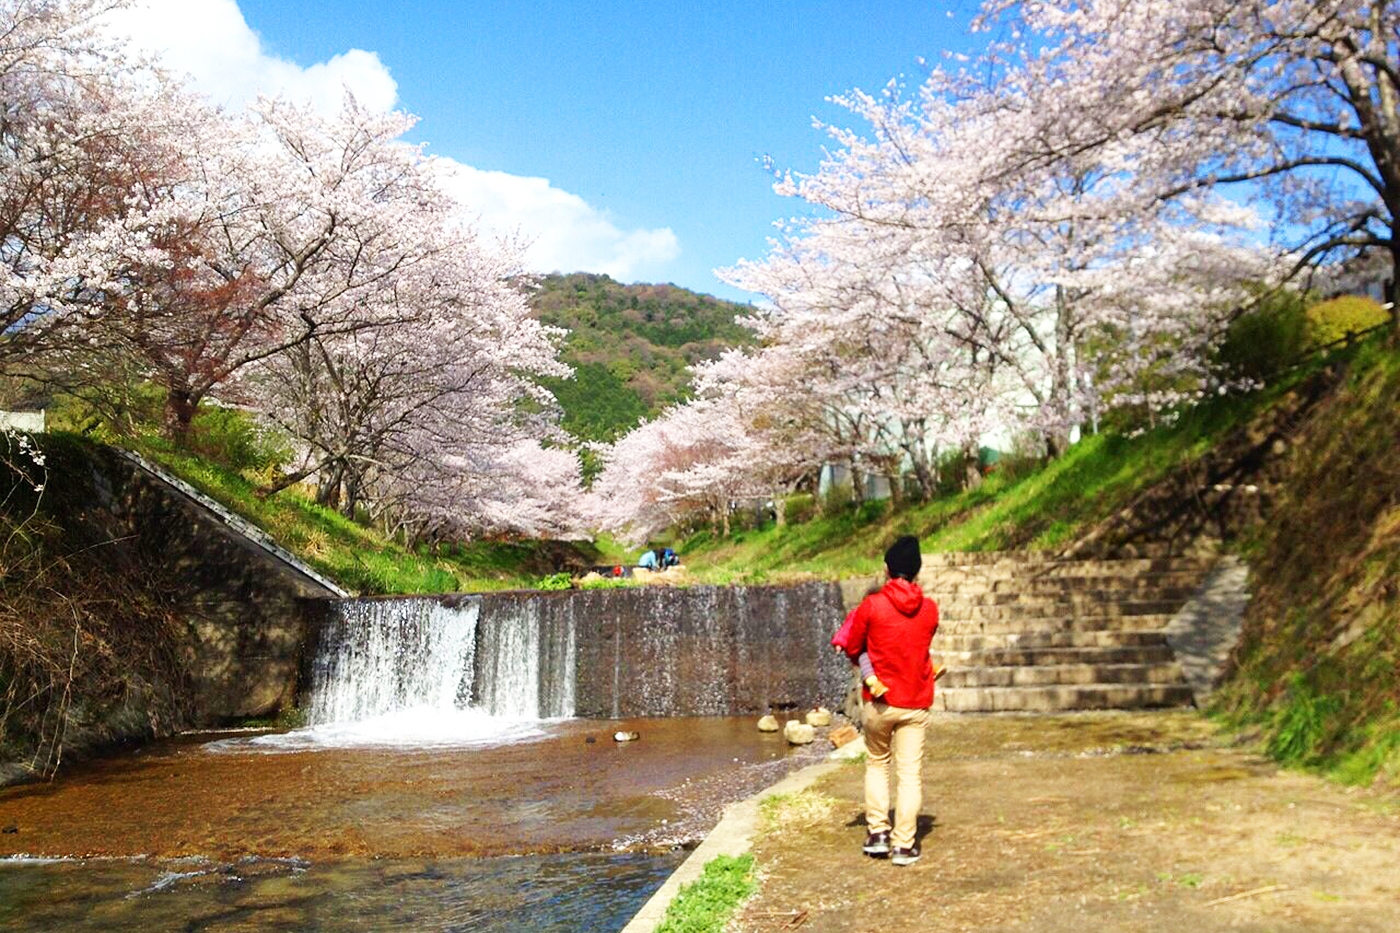 オフィス近くの風景(井出桜)：桜で有名な「山吹の井手の玉川」会社近くの名所です。